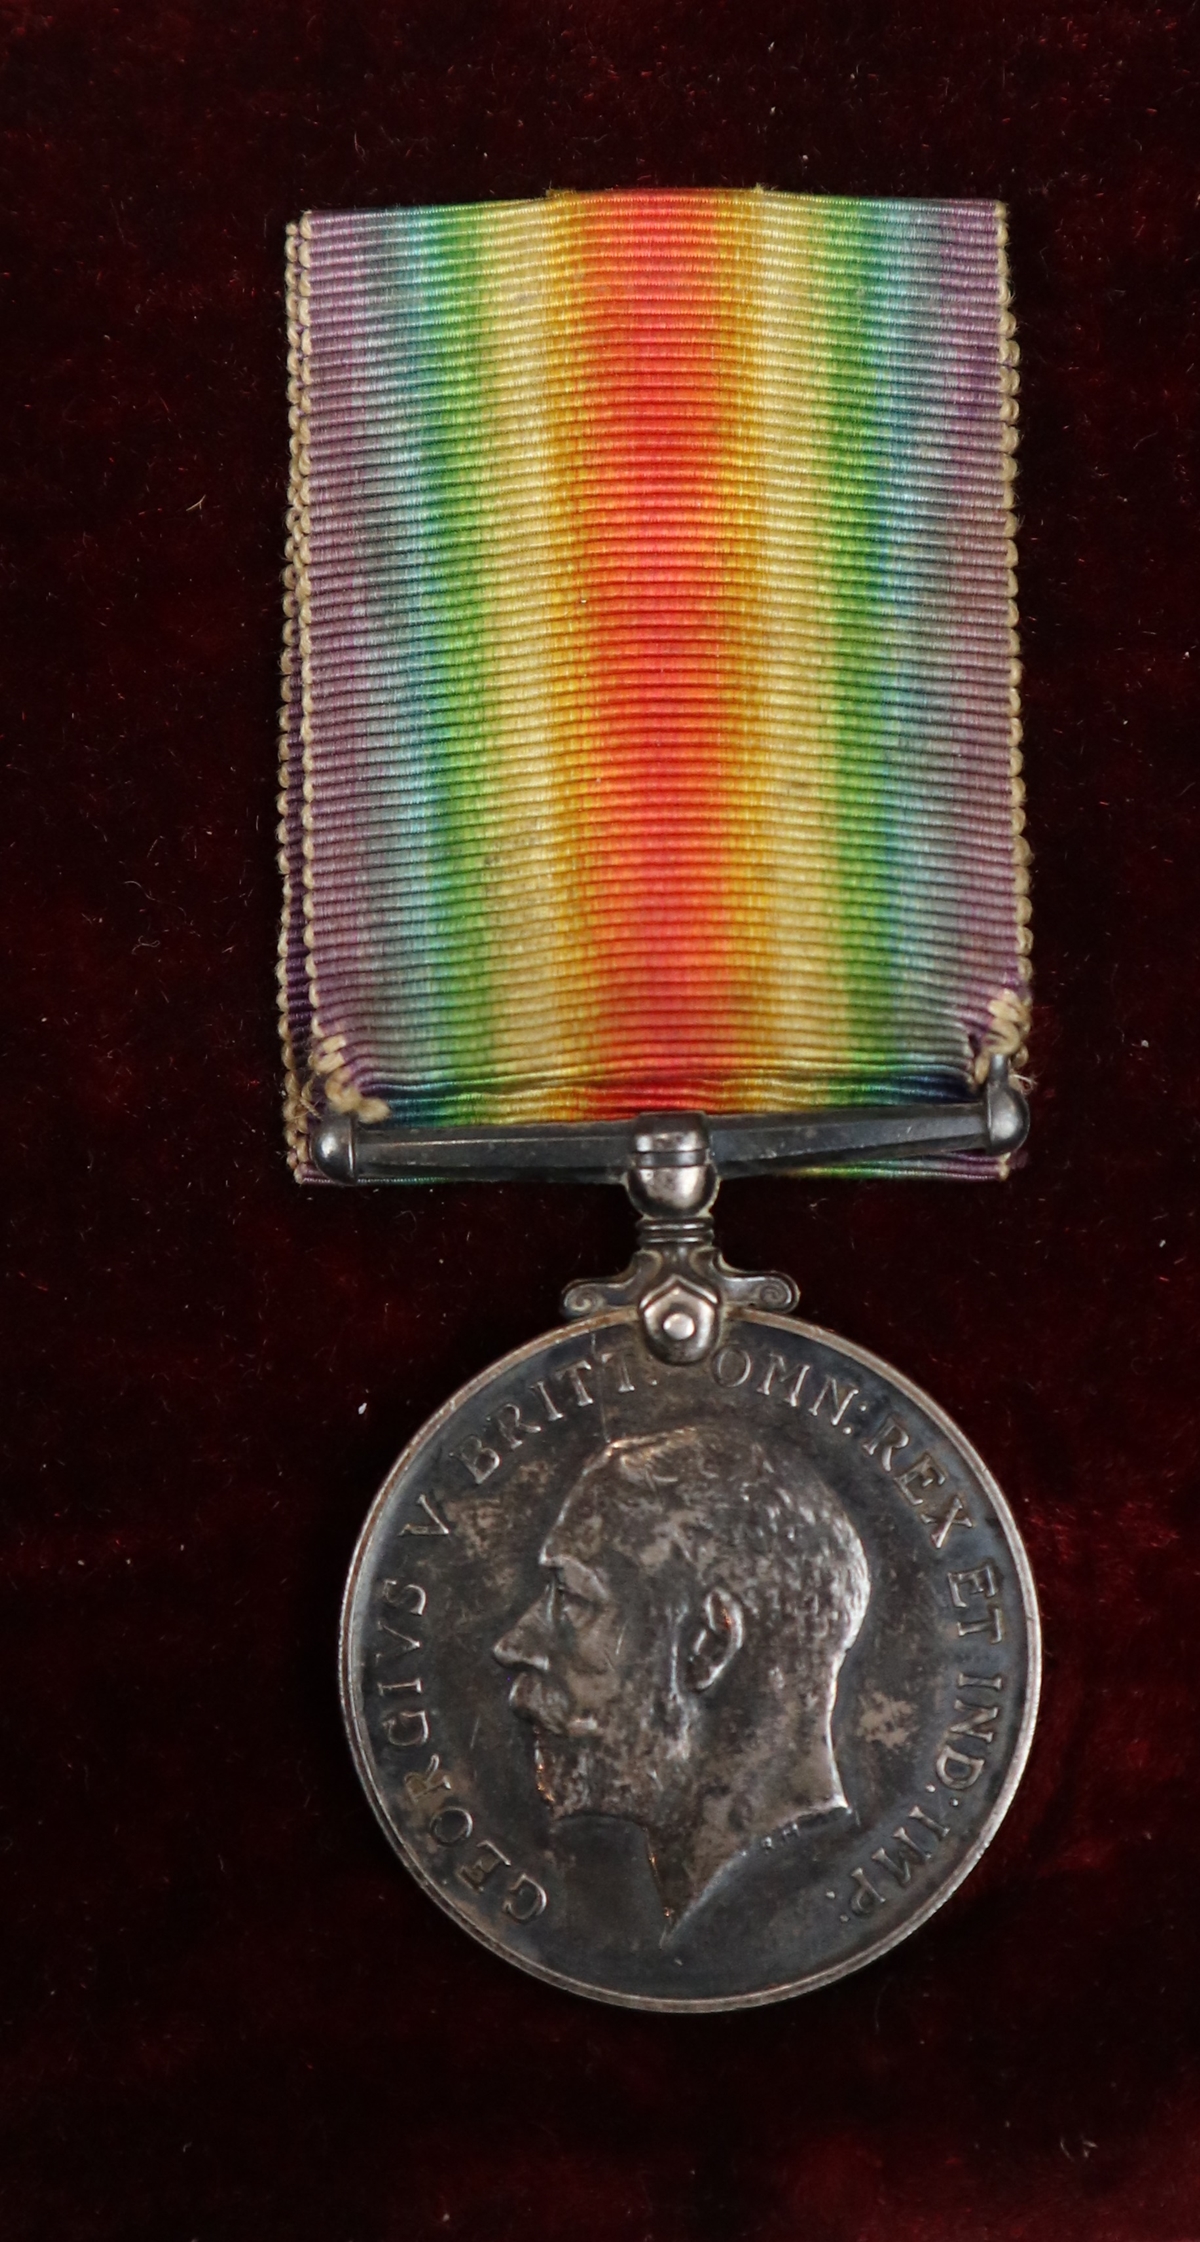 George V cased medal - 141171 J H Lawrence - Image 2 of 3